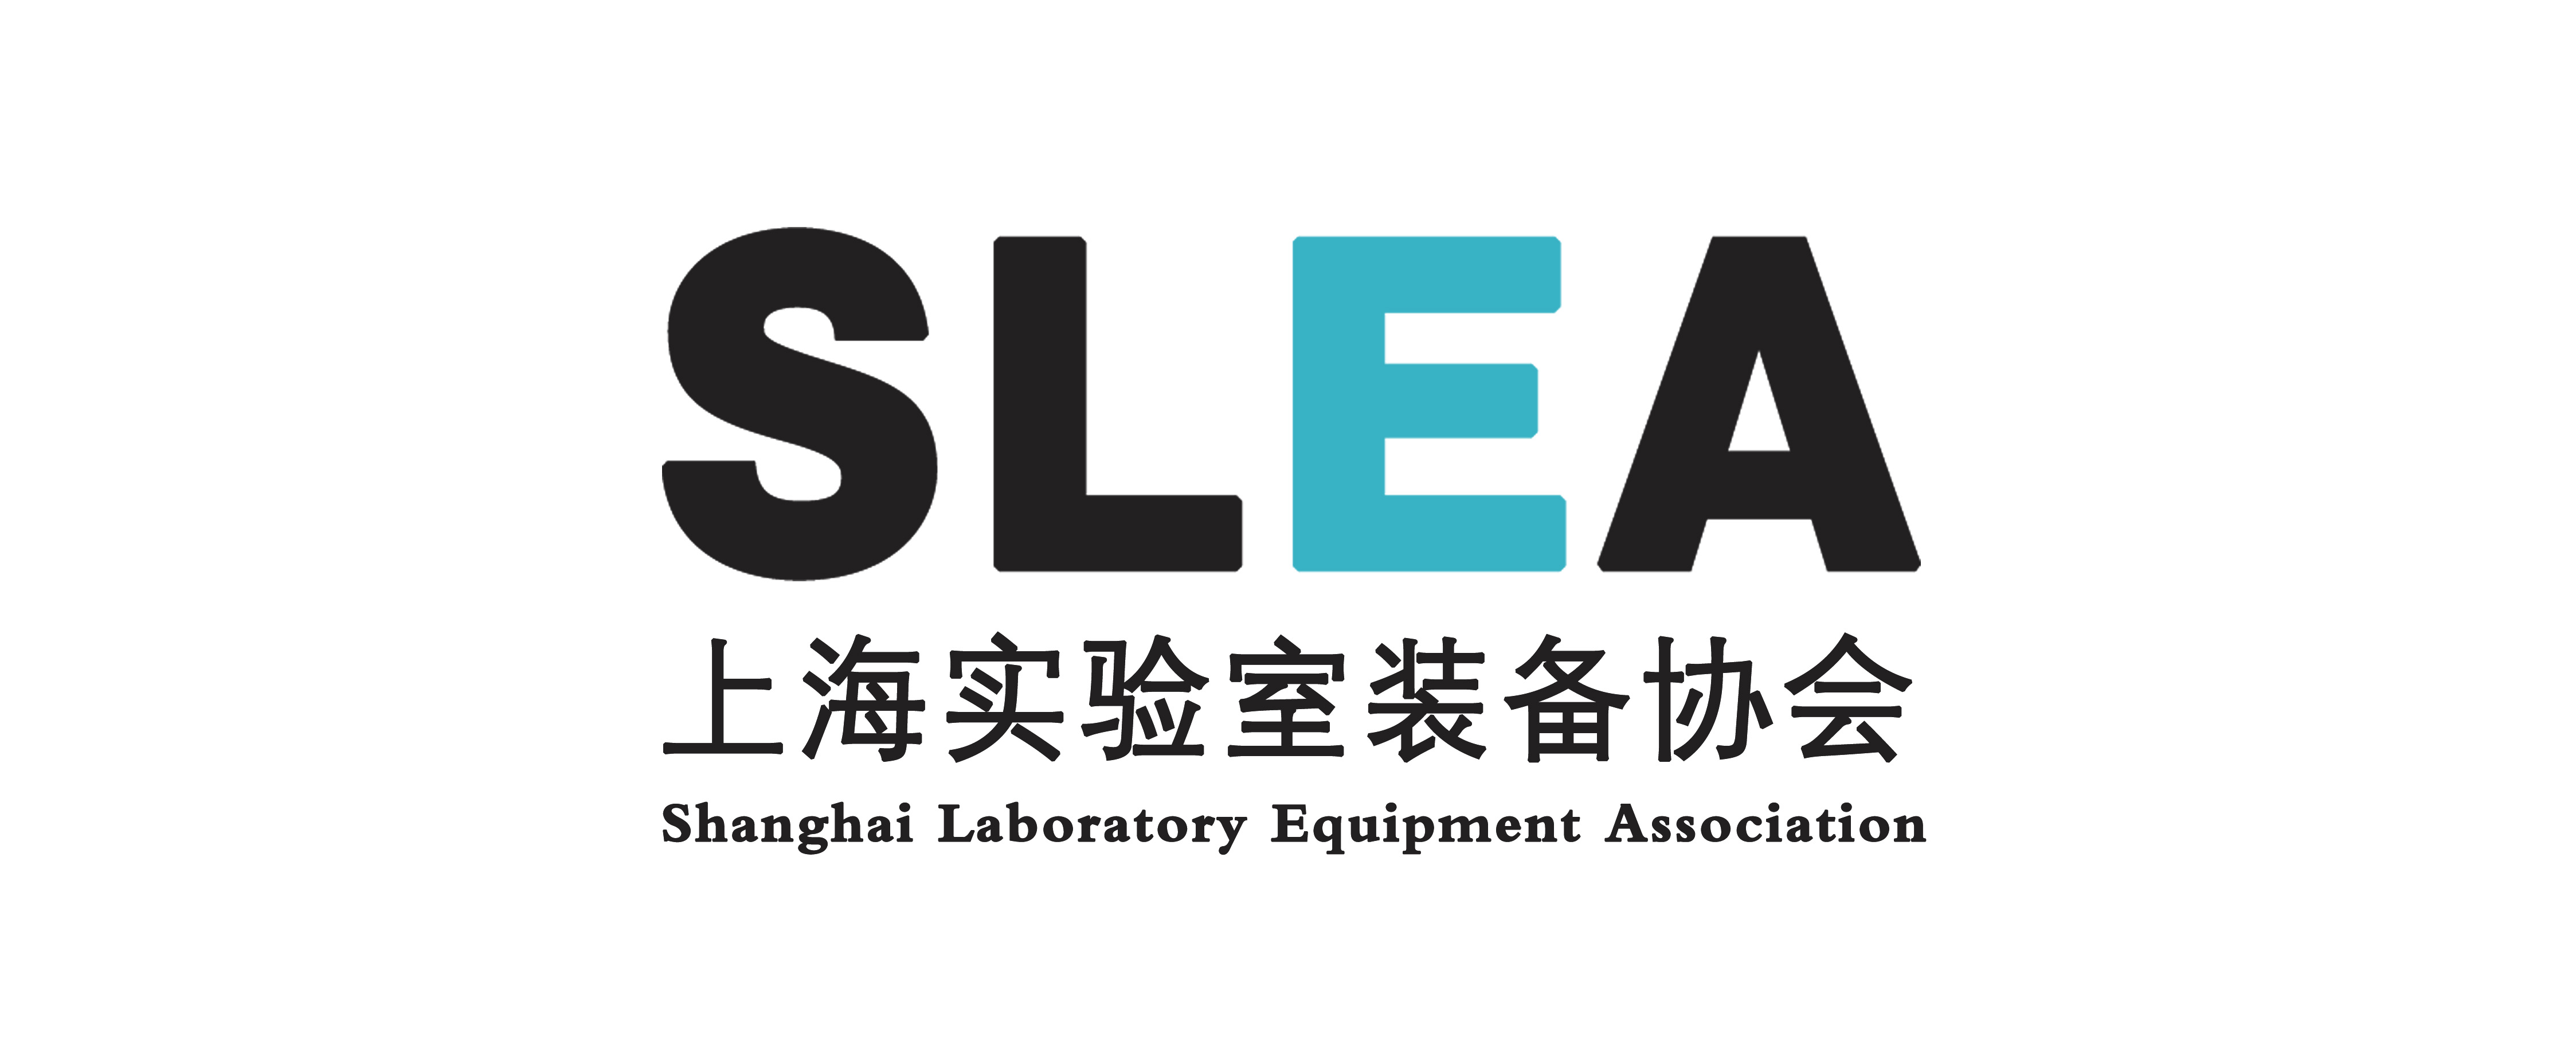 上海实验室装备协会